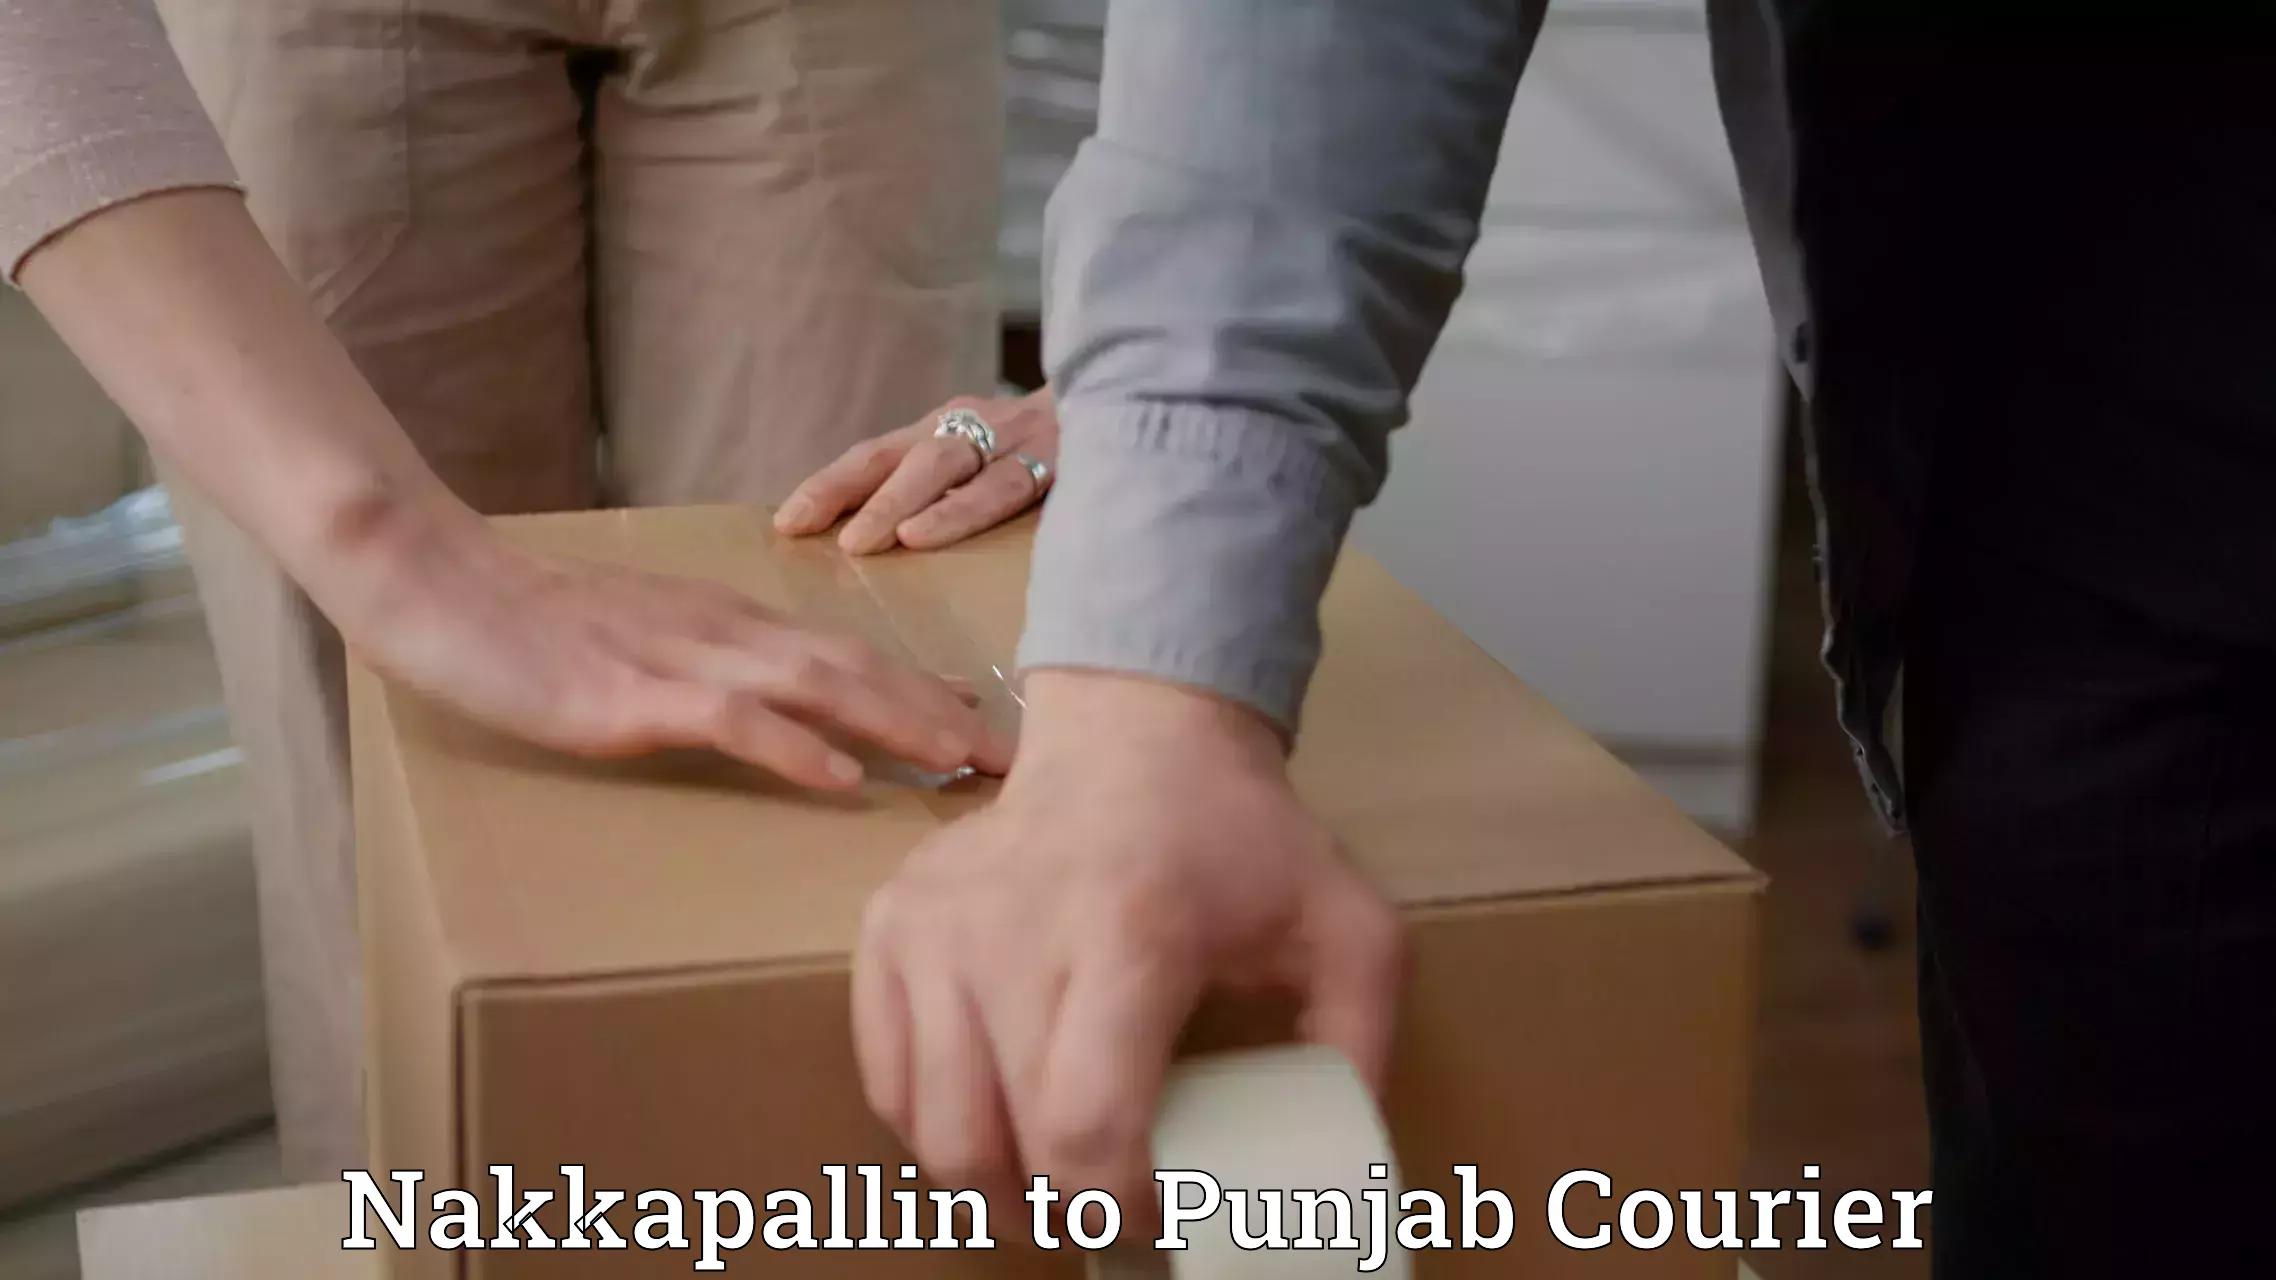 Door-to-door freight service Nakkapallin to Punjab